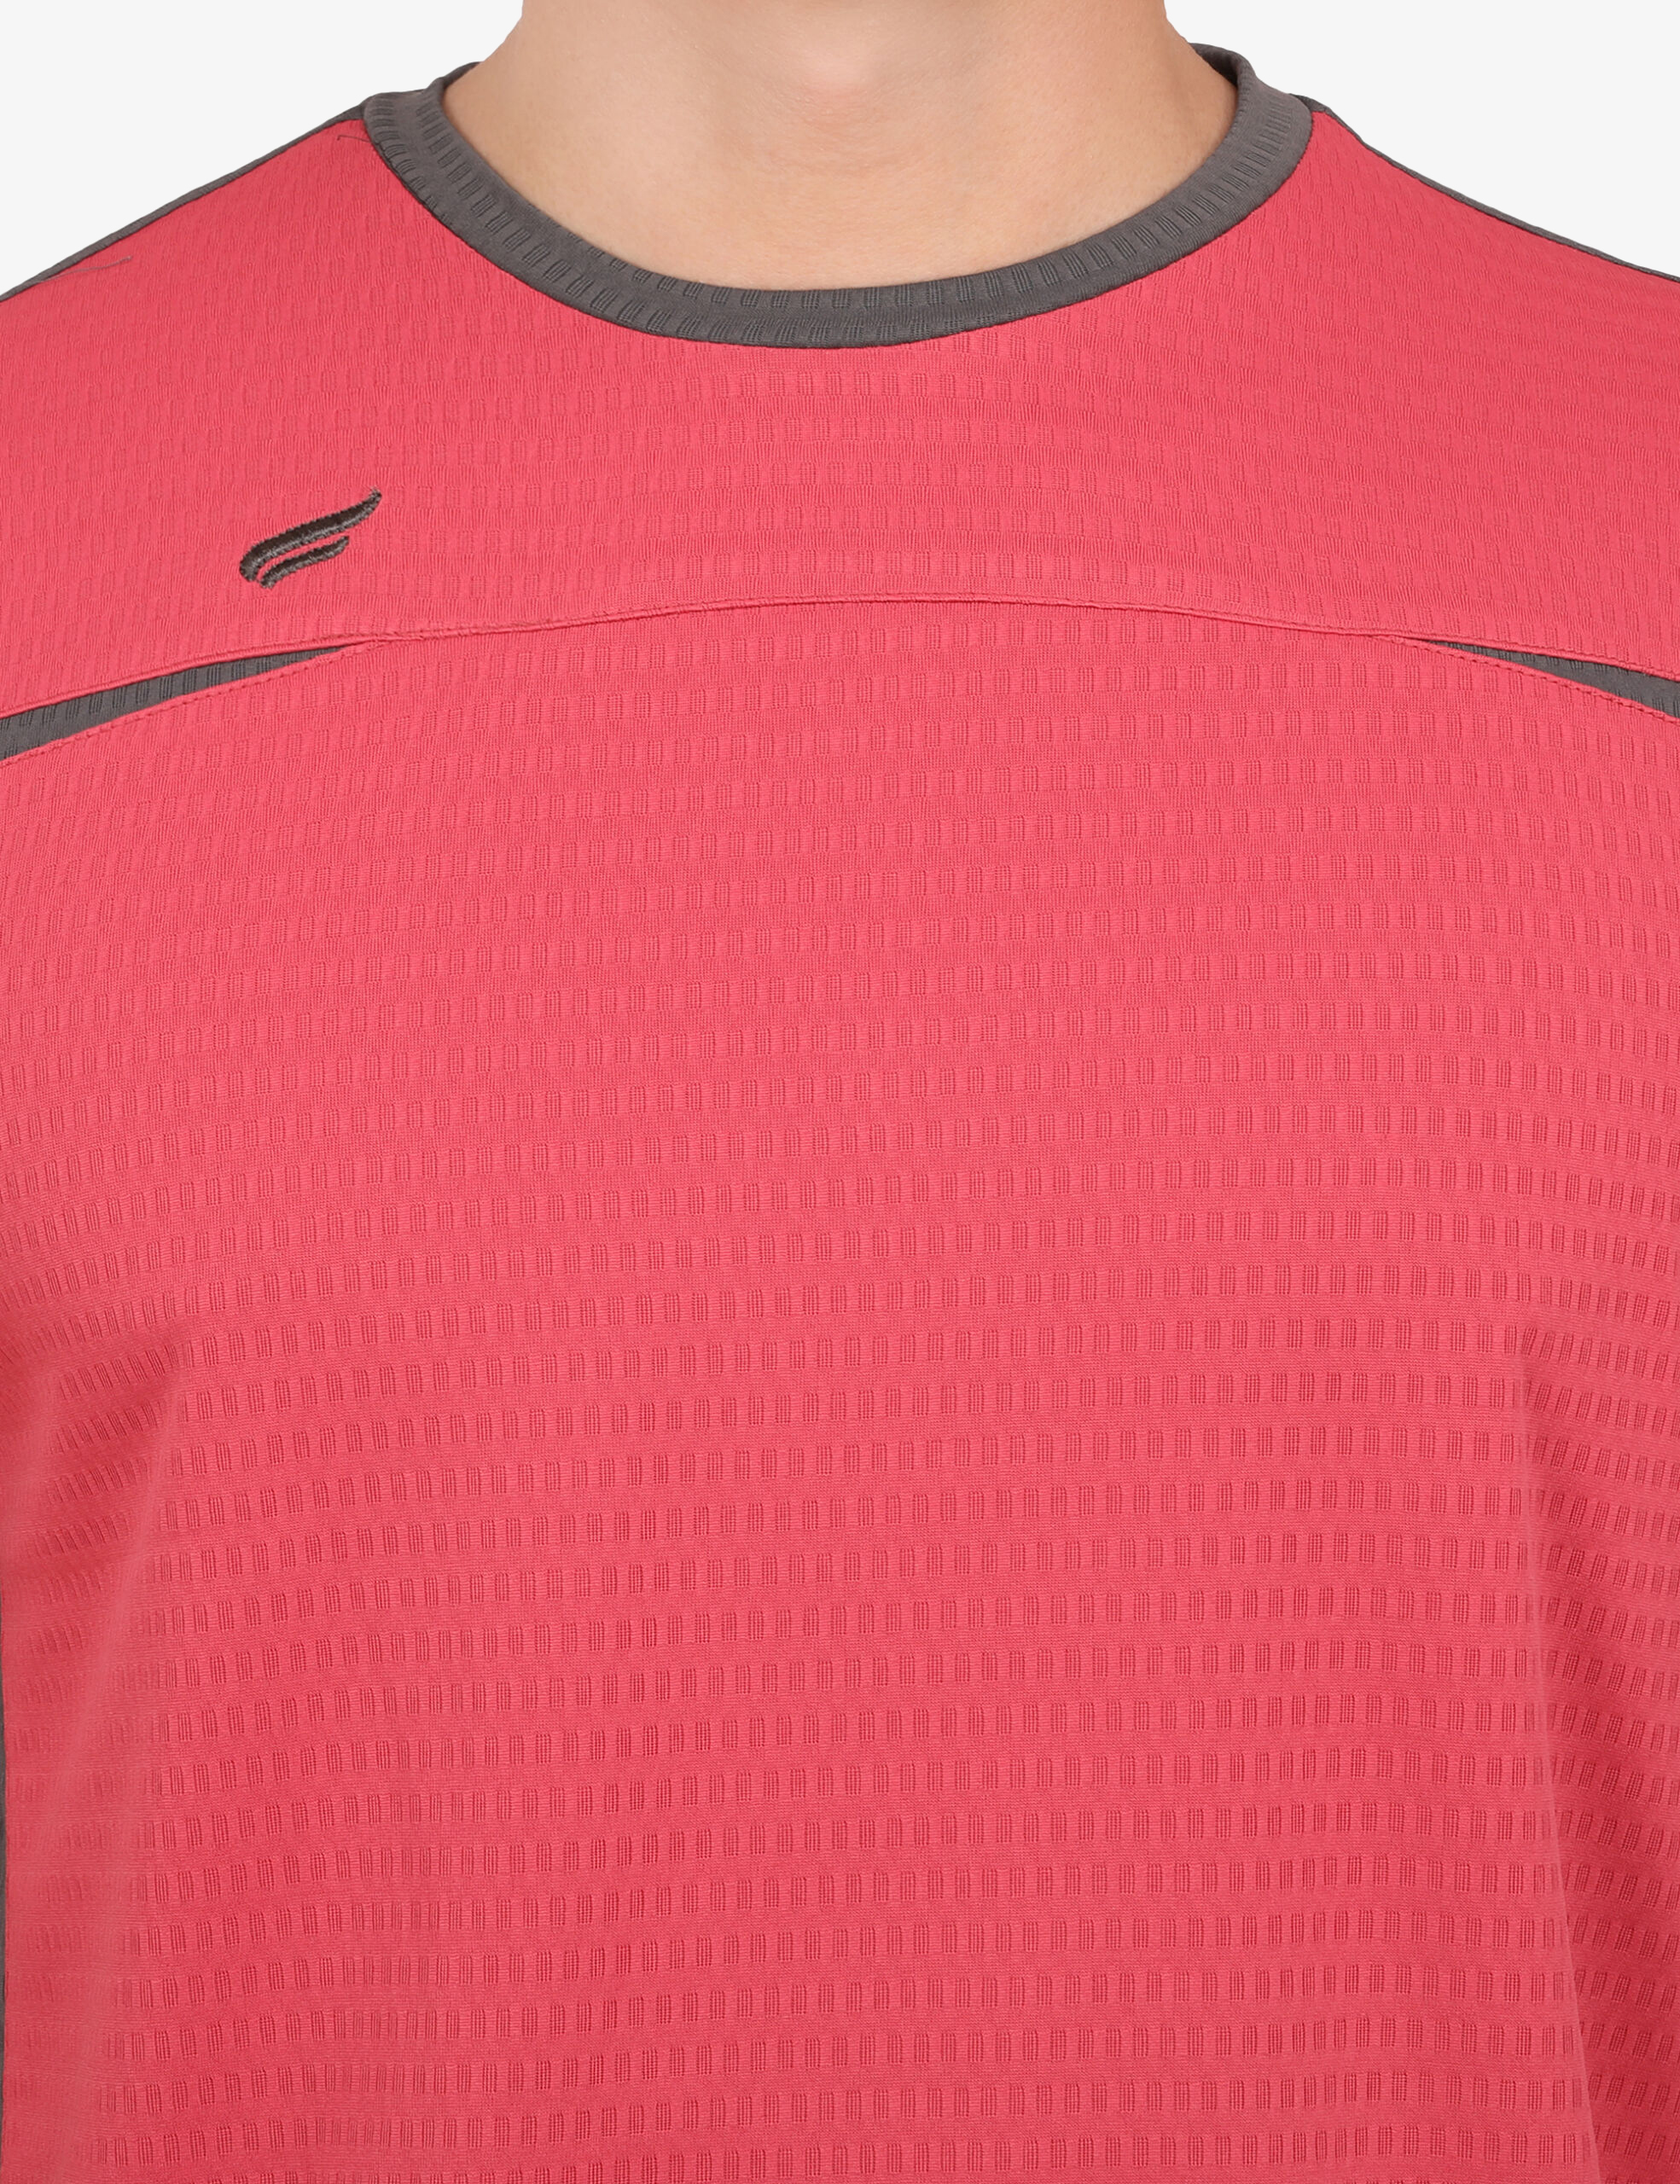 ASI Styler Pink Sports T-shirt for Men